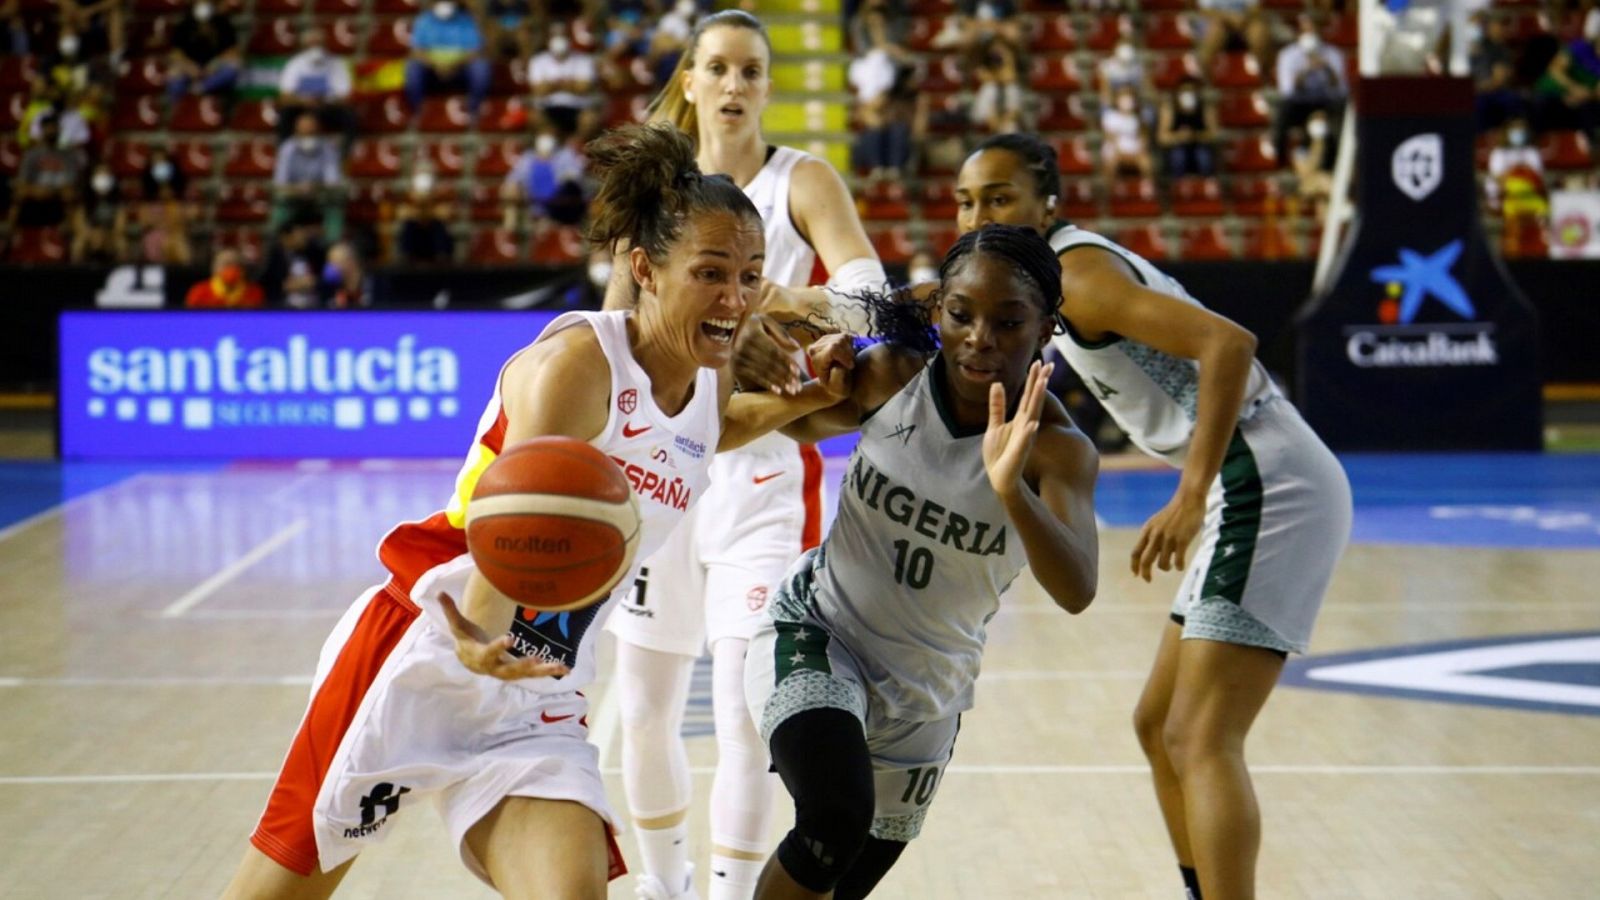 Baloncesto - Gira preparación Eurobasket femenino 2021: España - Nigeria